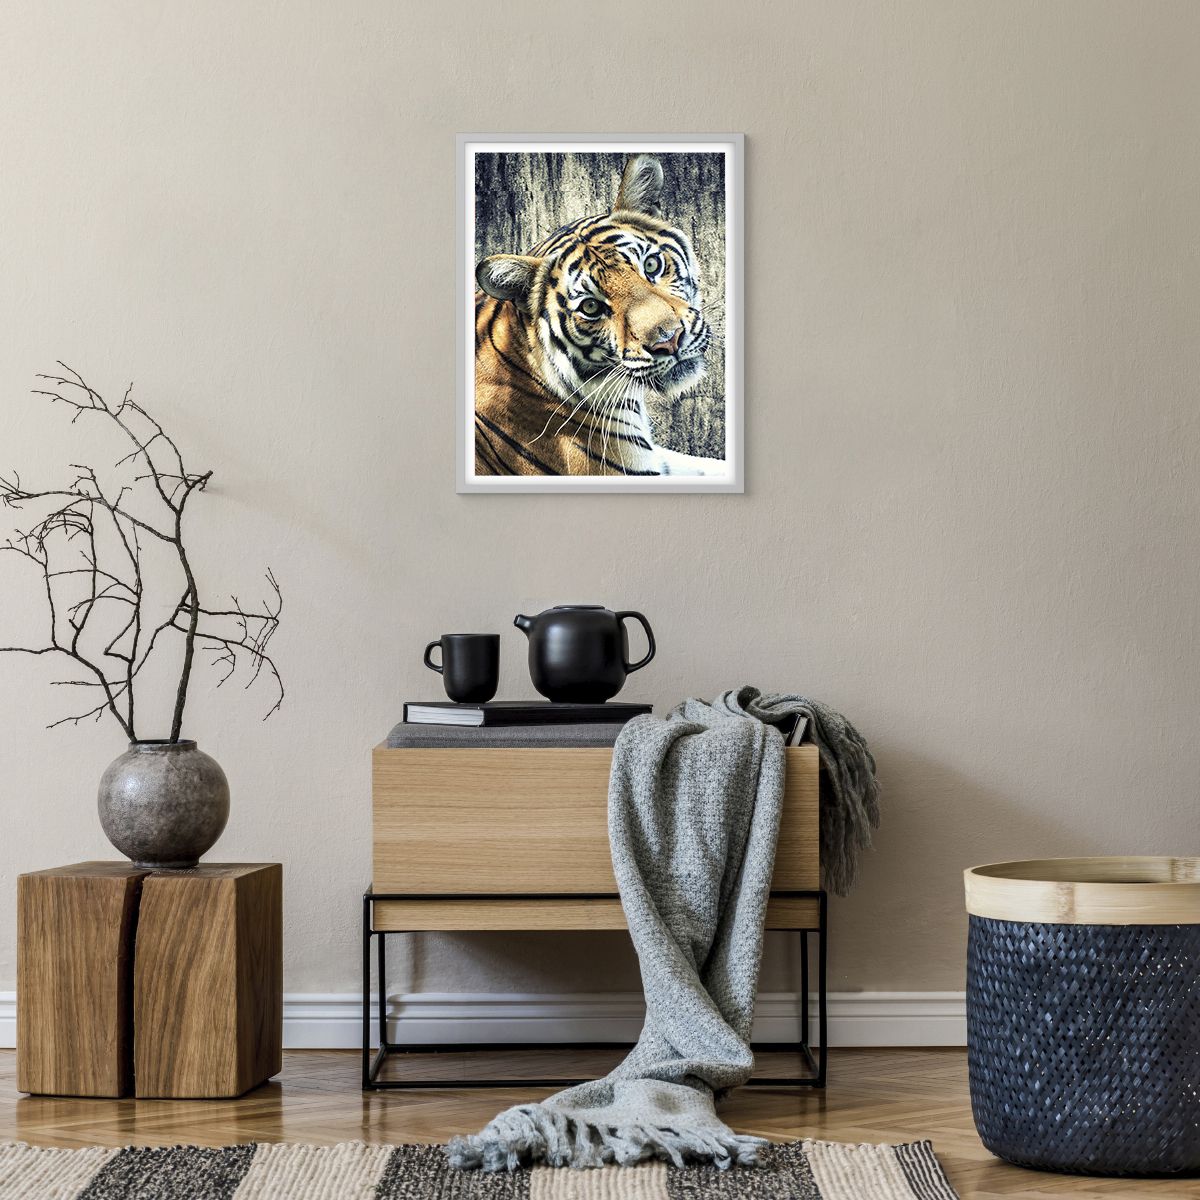 Poster in einem weißen Rahmen Tiere, Poster in einem weißen Rahmen Tiger, Poster in einem weißen Rahmen Afrika, Poster in einem weißen Rahmen Wildes Tier, Poster in einem weißen Rahmen Indien